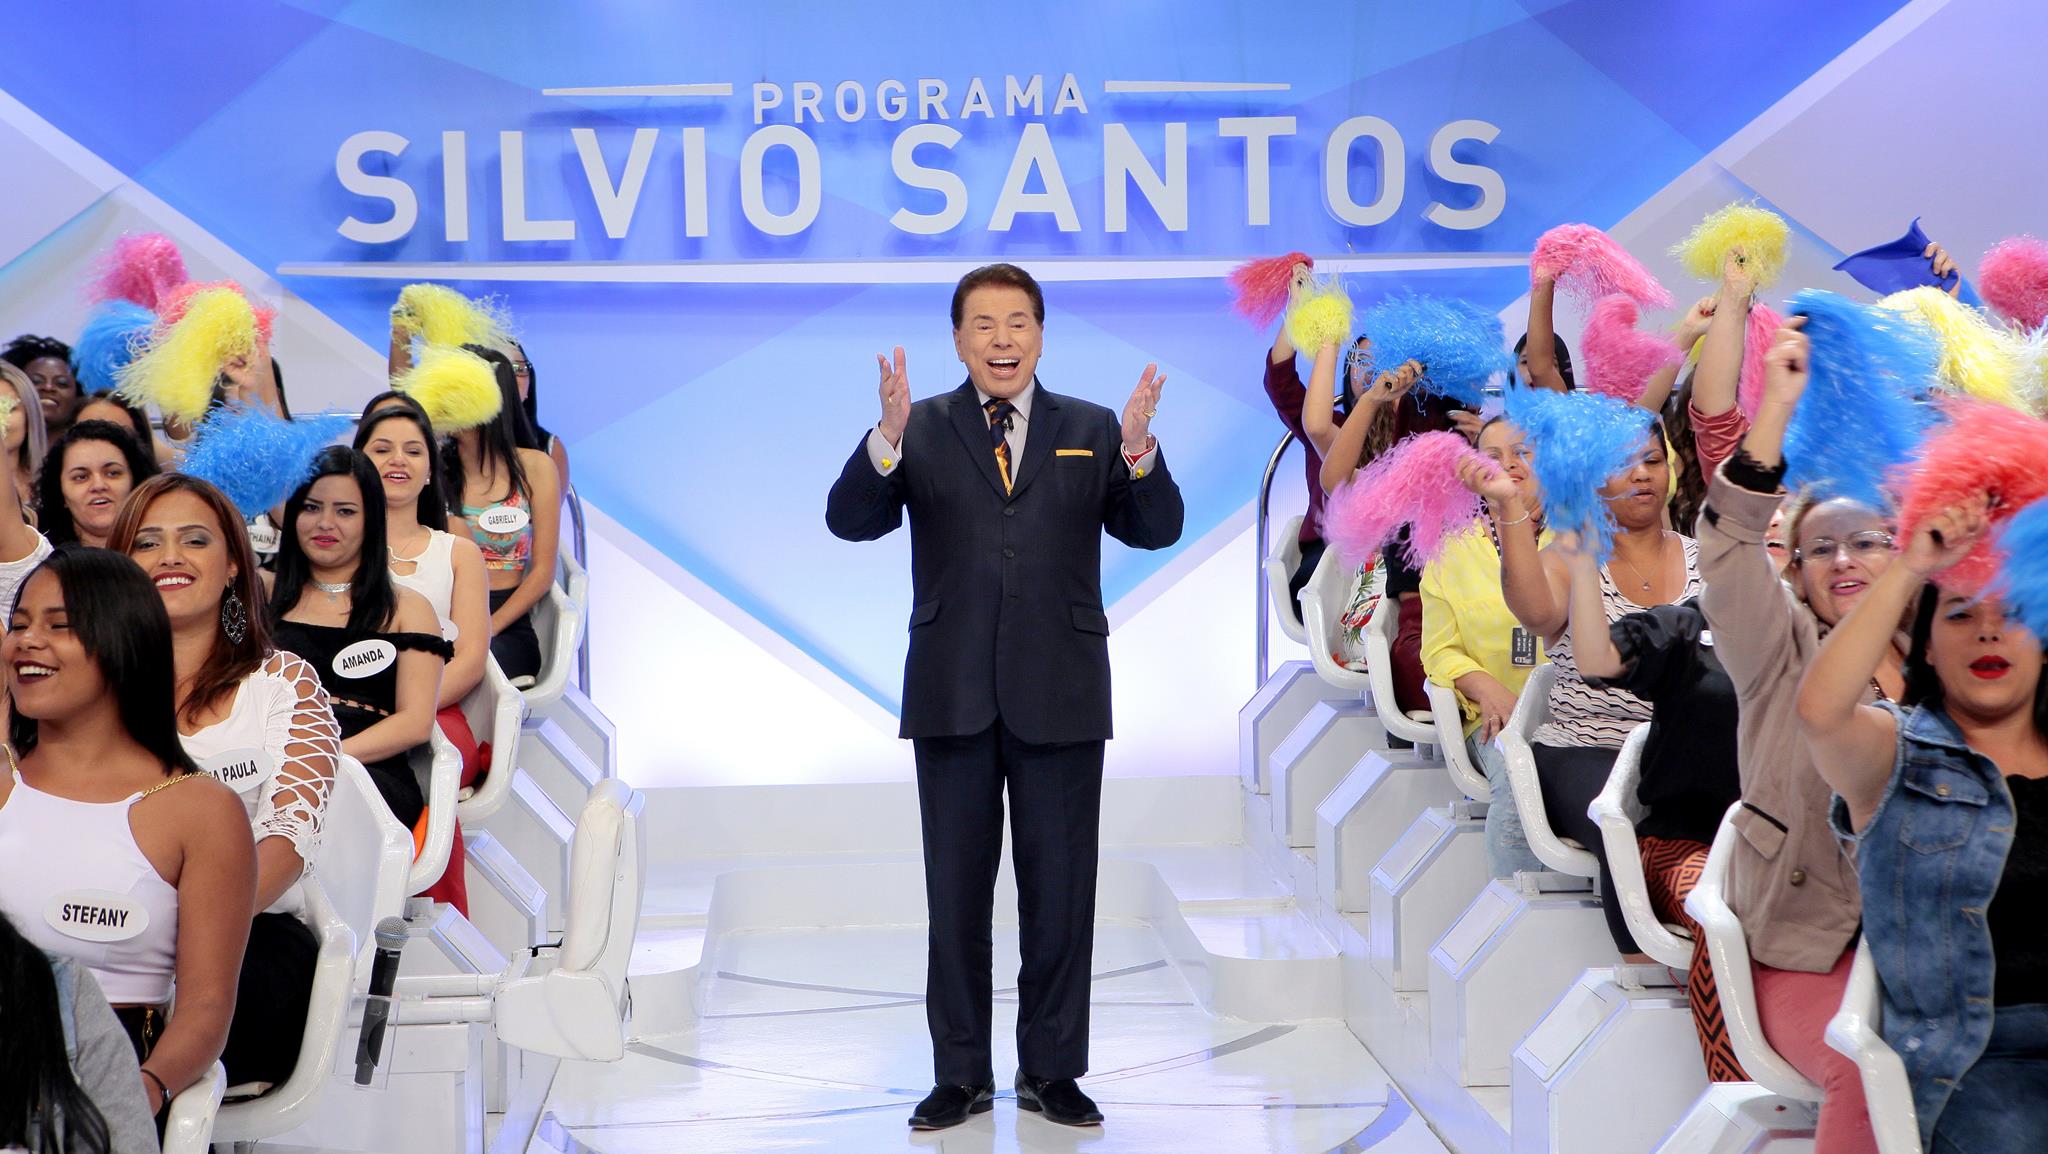 Silvio Santos interage com sua plateia